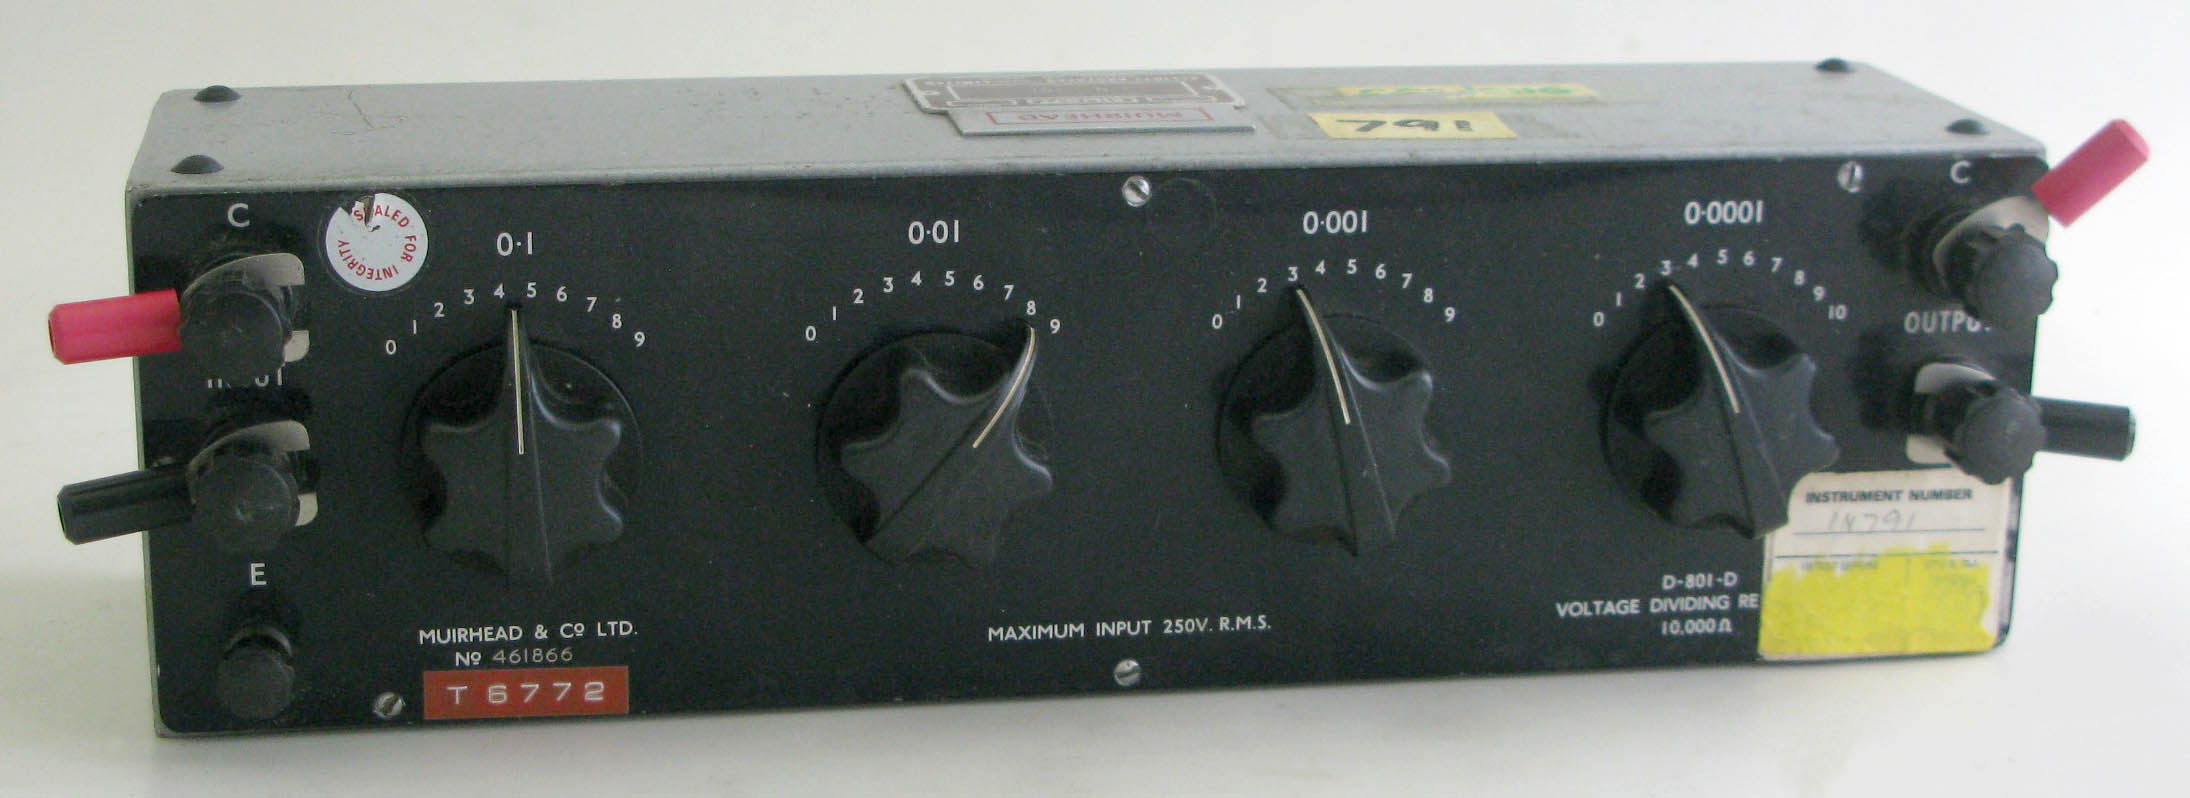 4-Decade Voltage Dividing Resistance Box